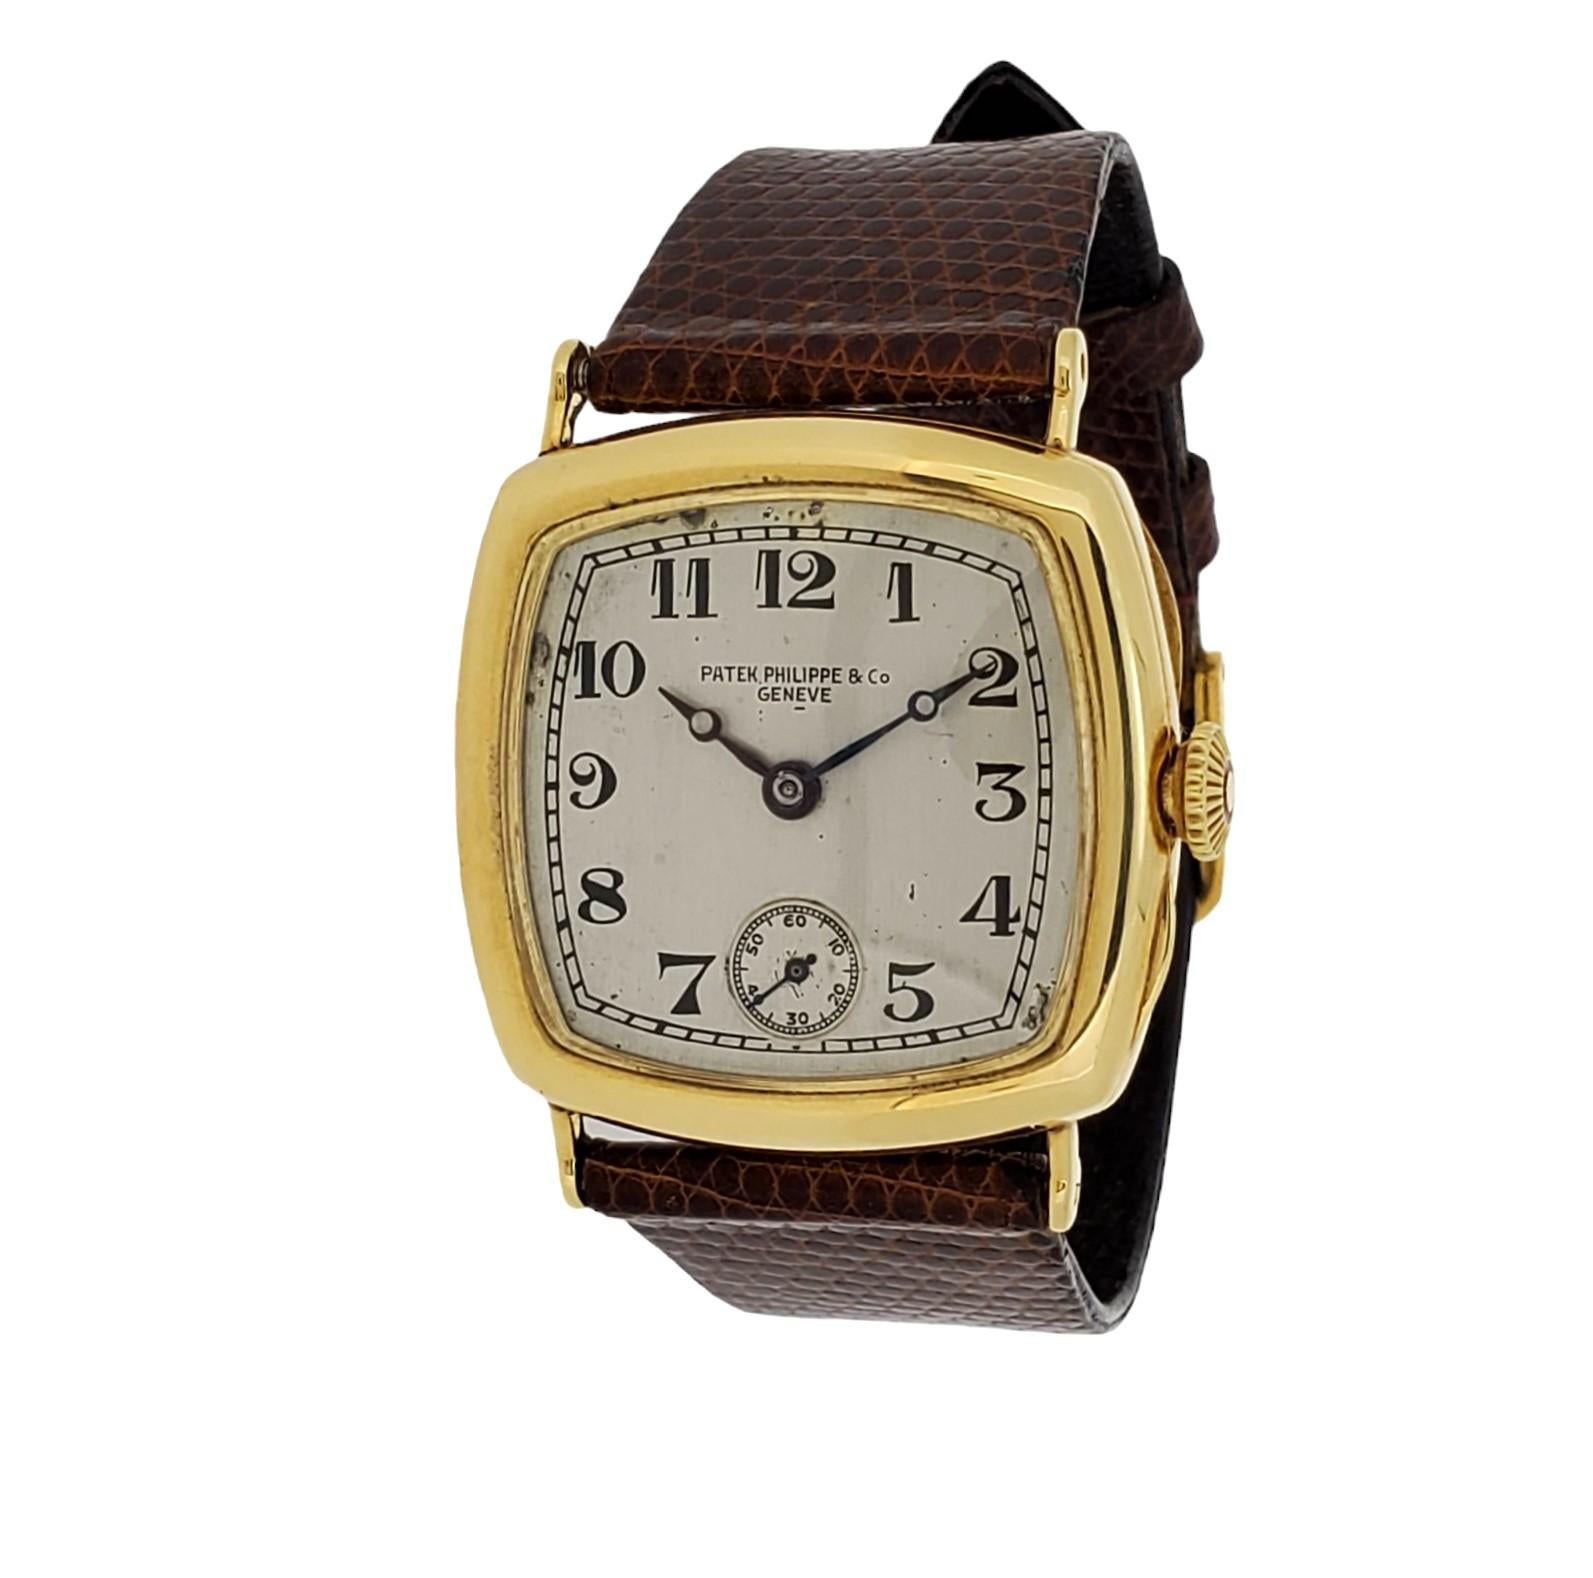 Patek Philippe Early Art Deco Cushion Form Uhr CIRCA 1927-1928,  Die Uhr ist aus 18K Gelbgold gefertigt und misst 31 x31 mm.  Die Uhr ist mit einem 10